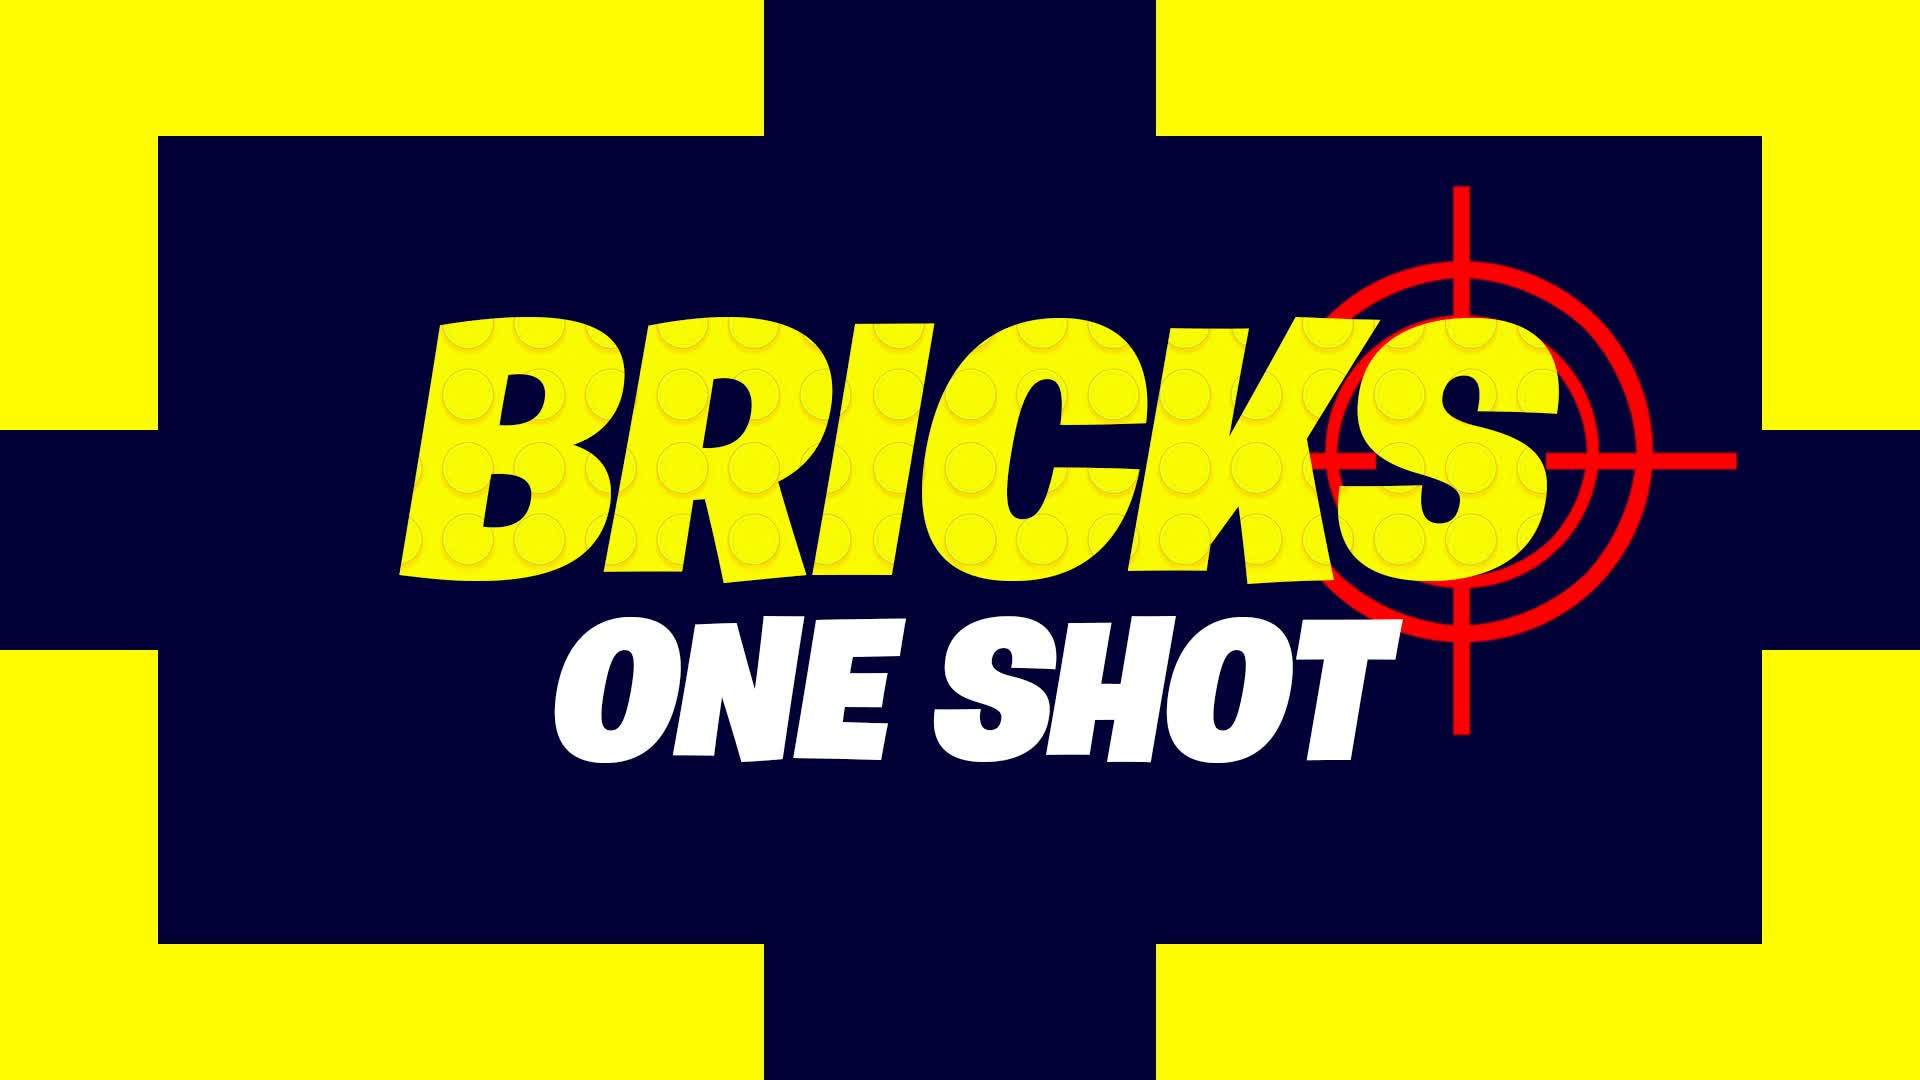 BRICKS ONE SHOT 🎯